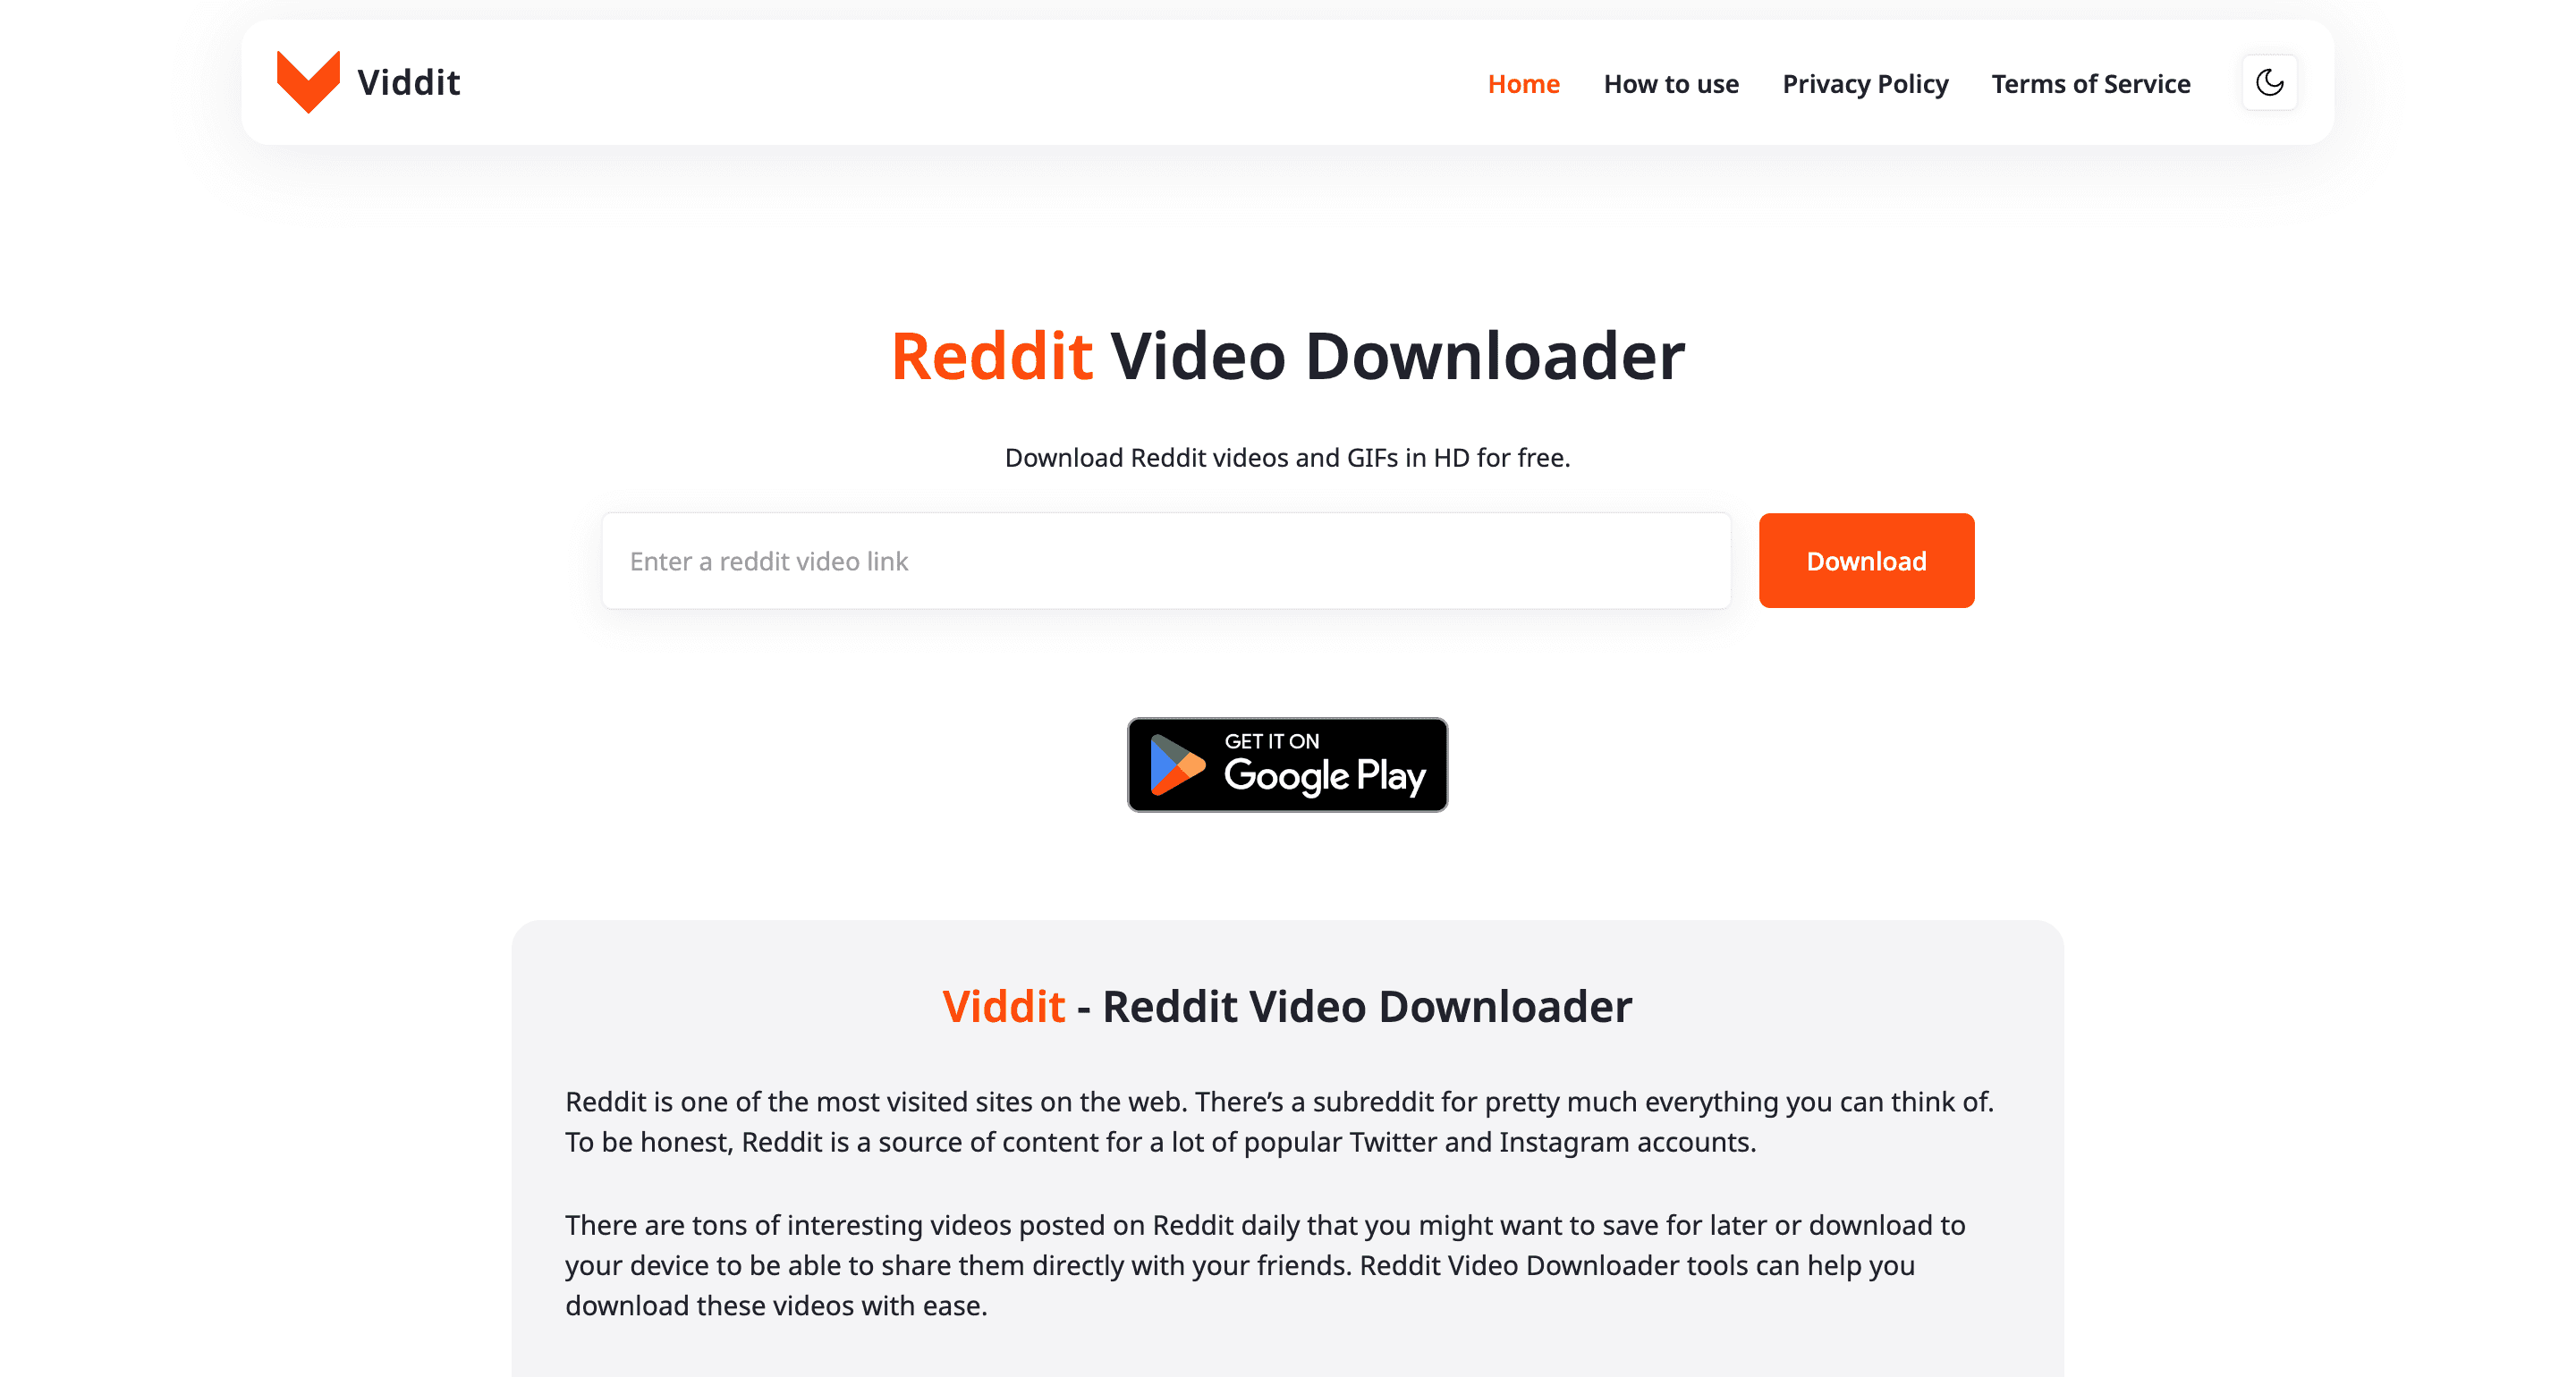 Reddit Video Downloader - Download Reddit Videos with Sound